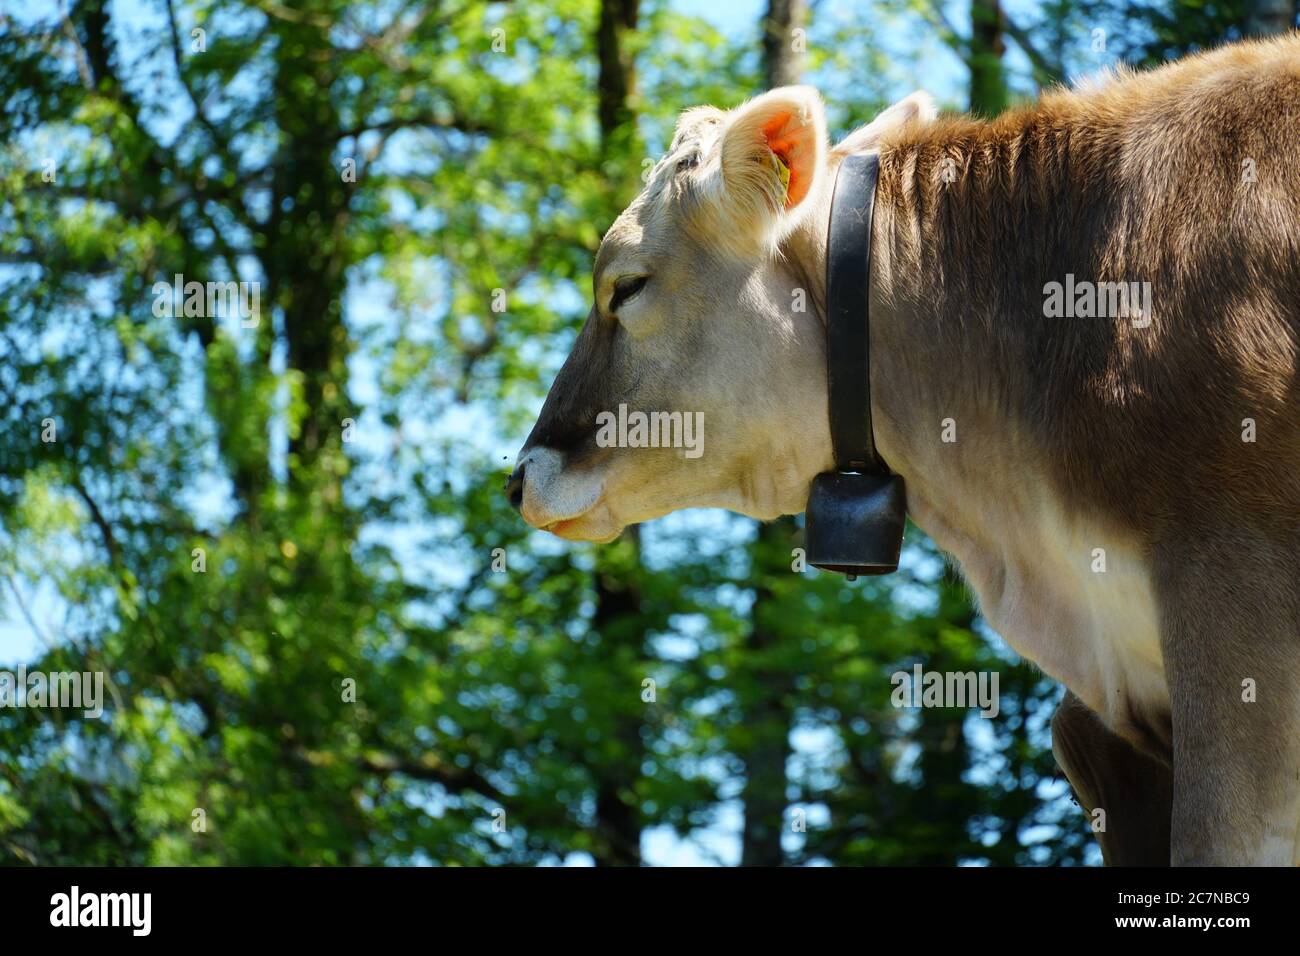 Kopf einer Kuh, Schweizer Brauenrasse in Seitenansicht mit einer typischen Kuhglocke am Hals. Foto aufgenommen auf der Weide rund um das St. Gallen. Stockfoto